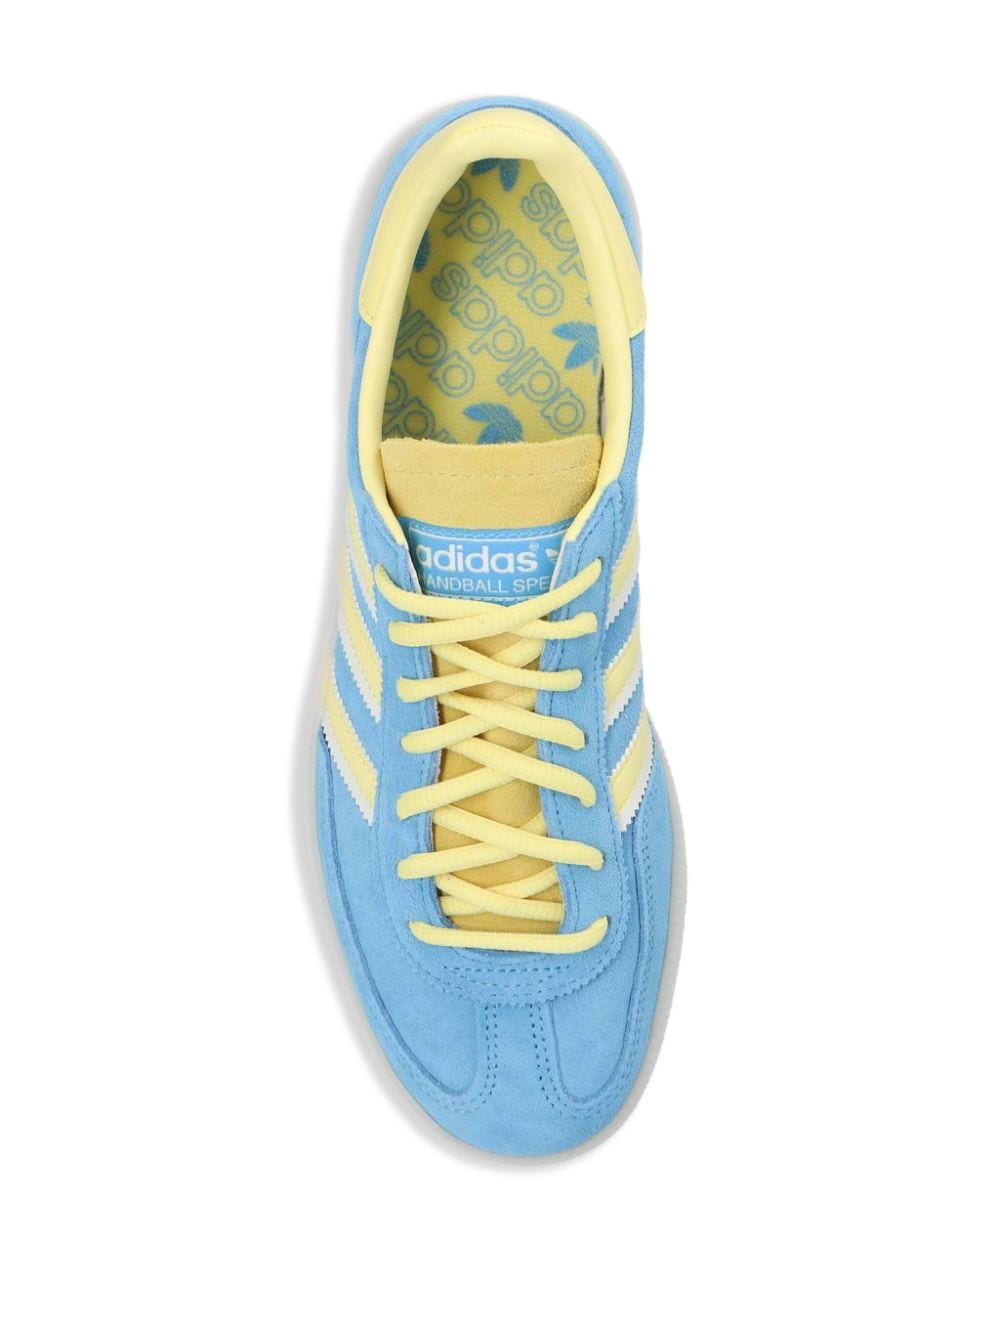 Shop Adidas Originals Handball Spezial Suede Sneakers In Blue